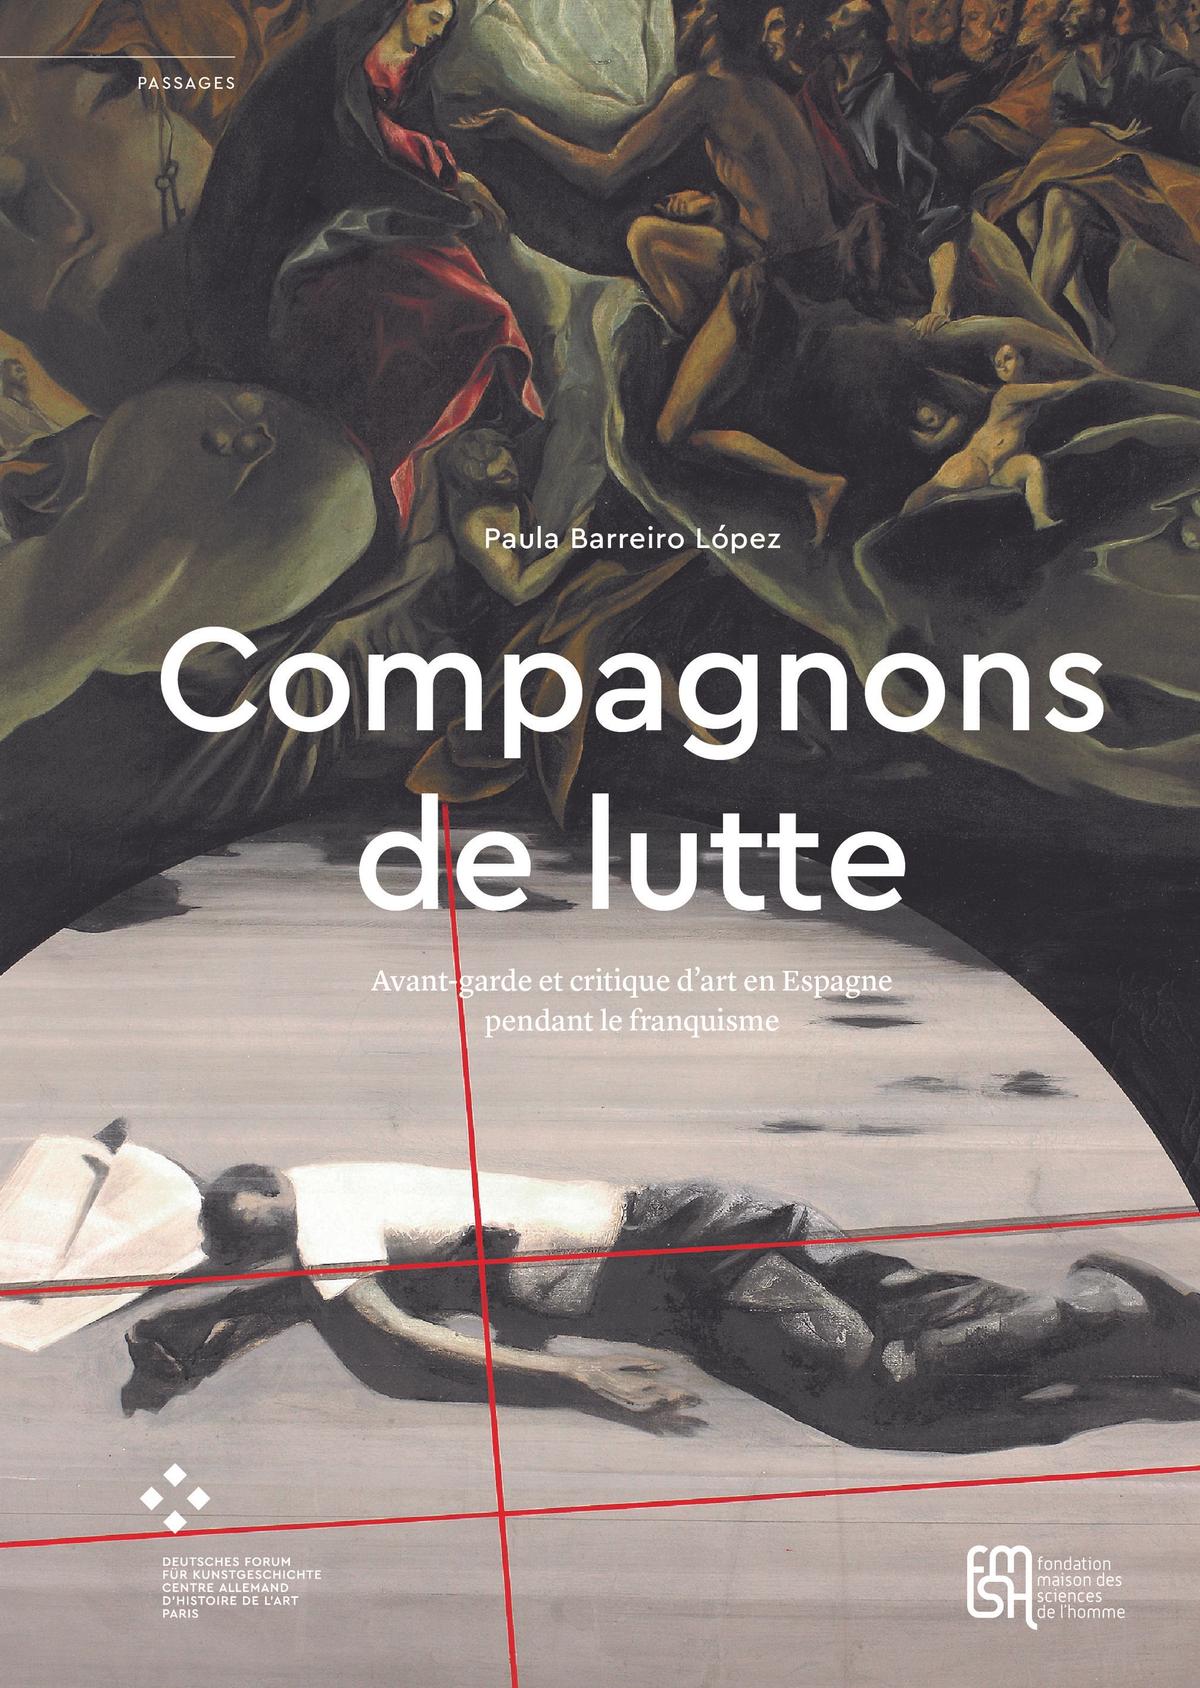 Couverture de l'ouvrage Compagnons de lutte. Avant-garde et critique d’art en Espagne pendant le franquisme, de Paula Barreiro López.